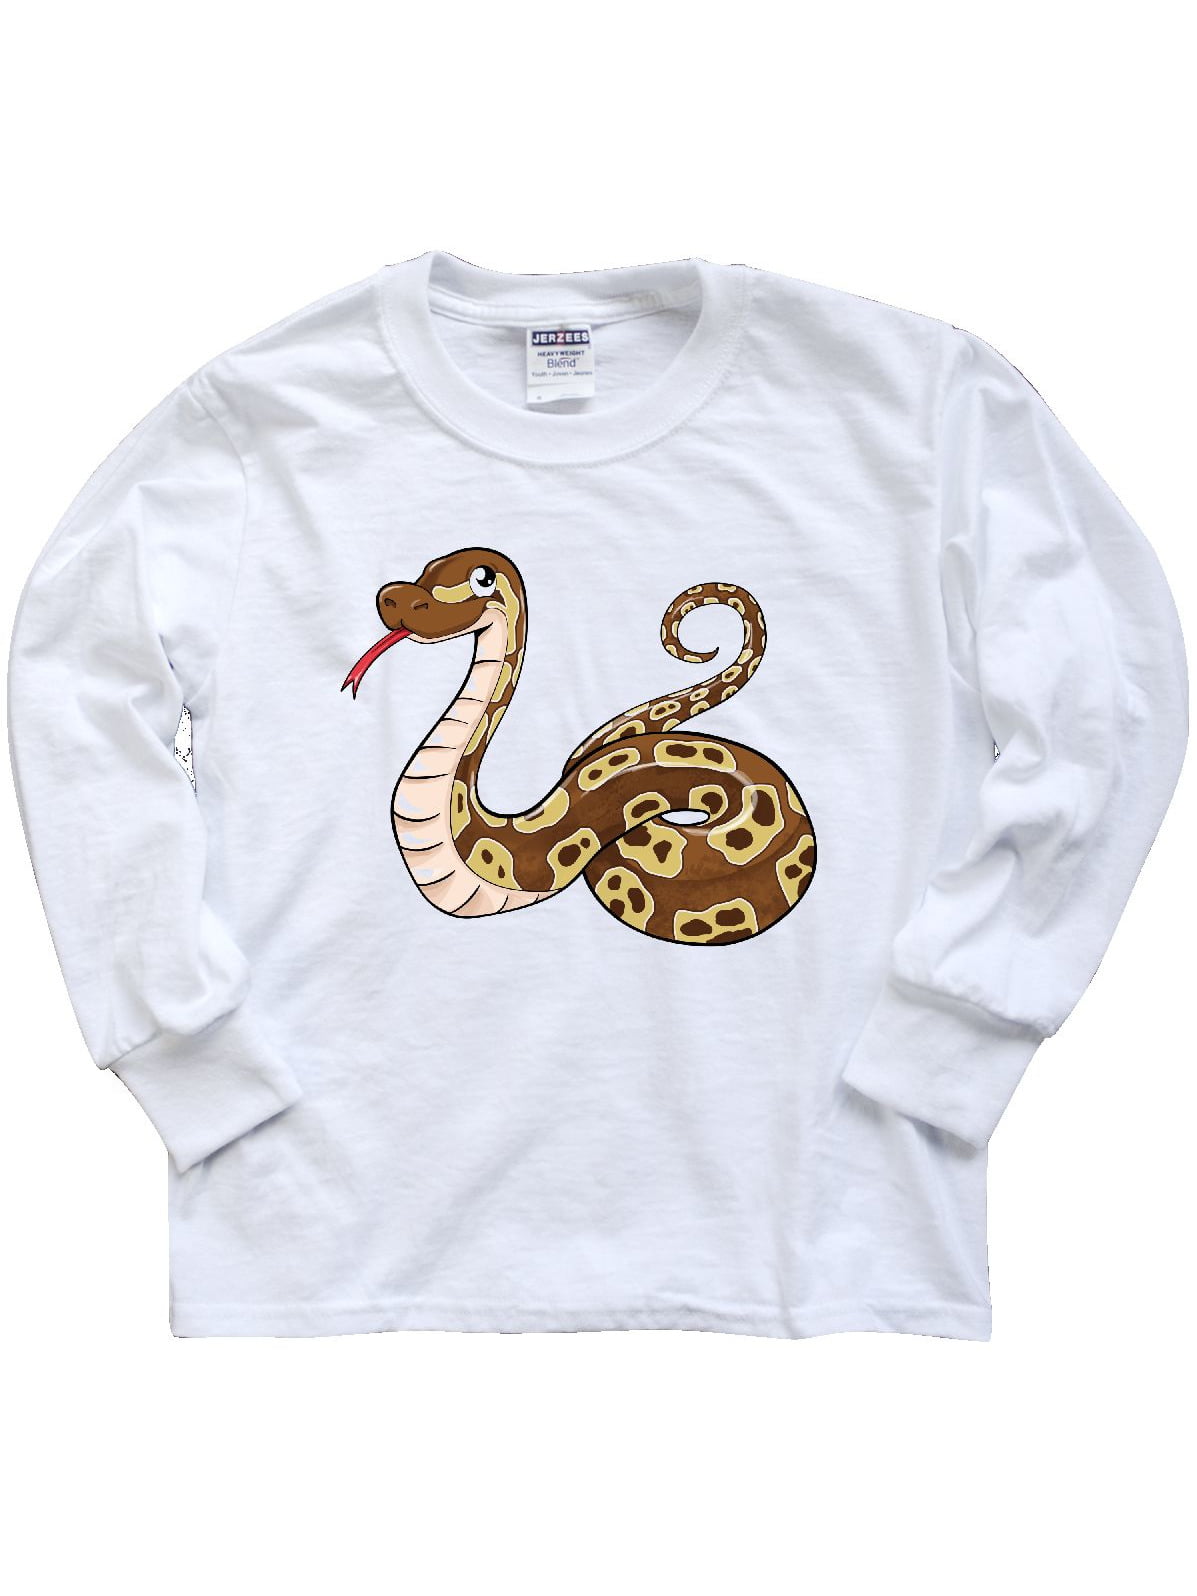 ball python shirt